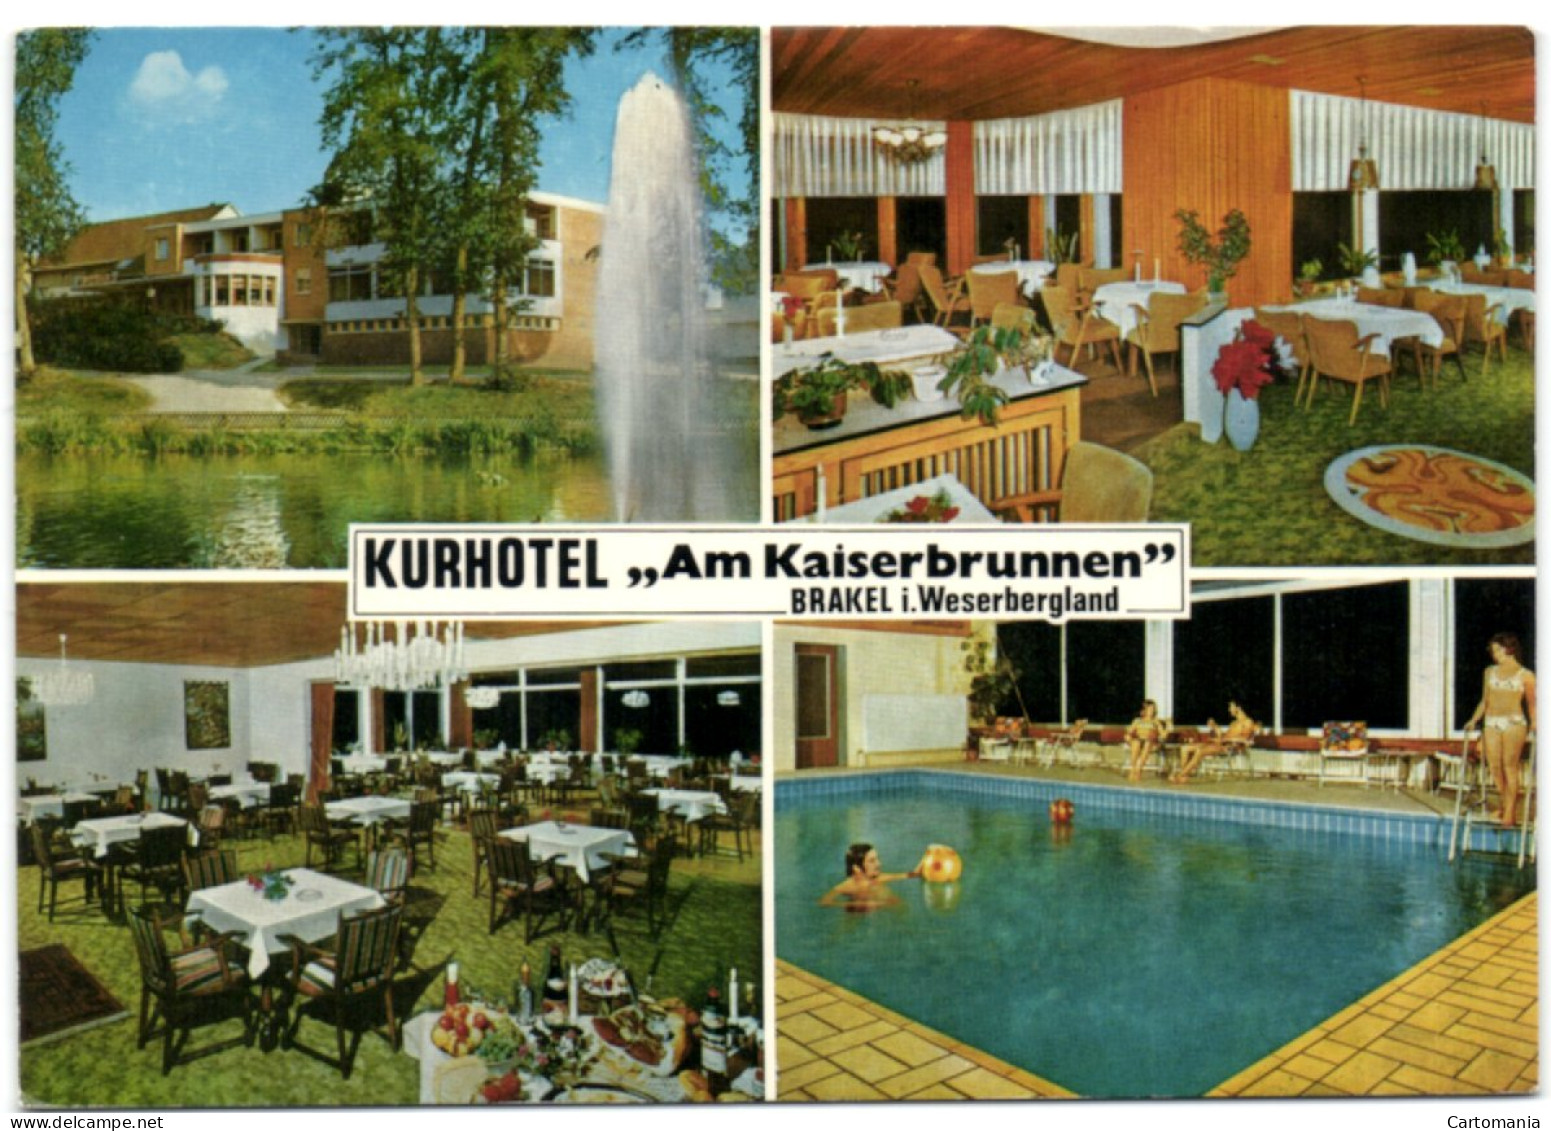 Brakel Im Weserbergland - Kurhotel Am Kaiserbrunnen - Brakel